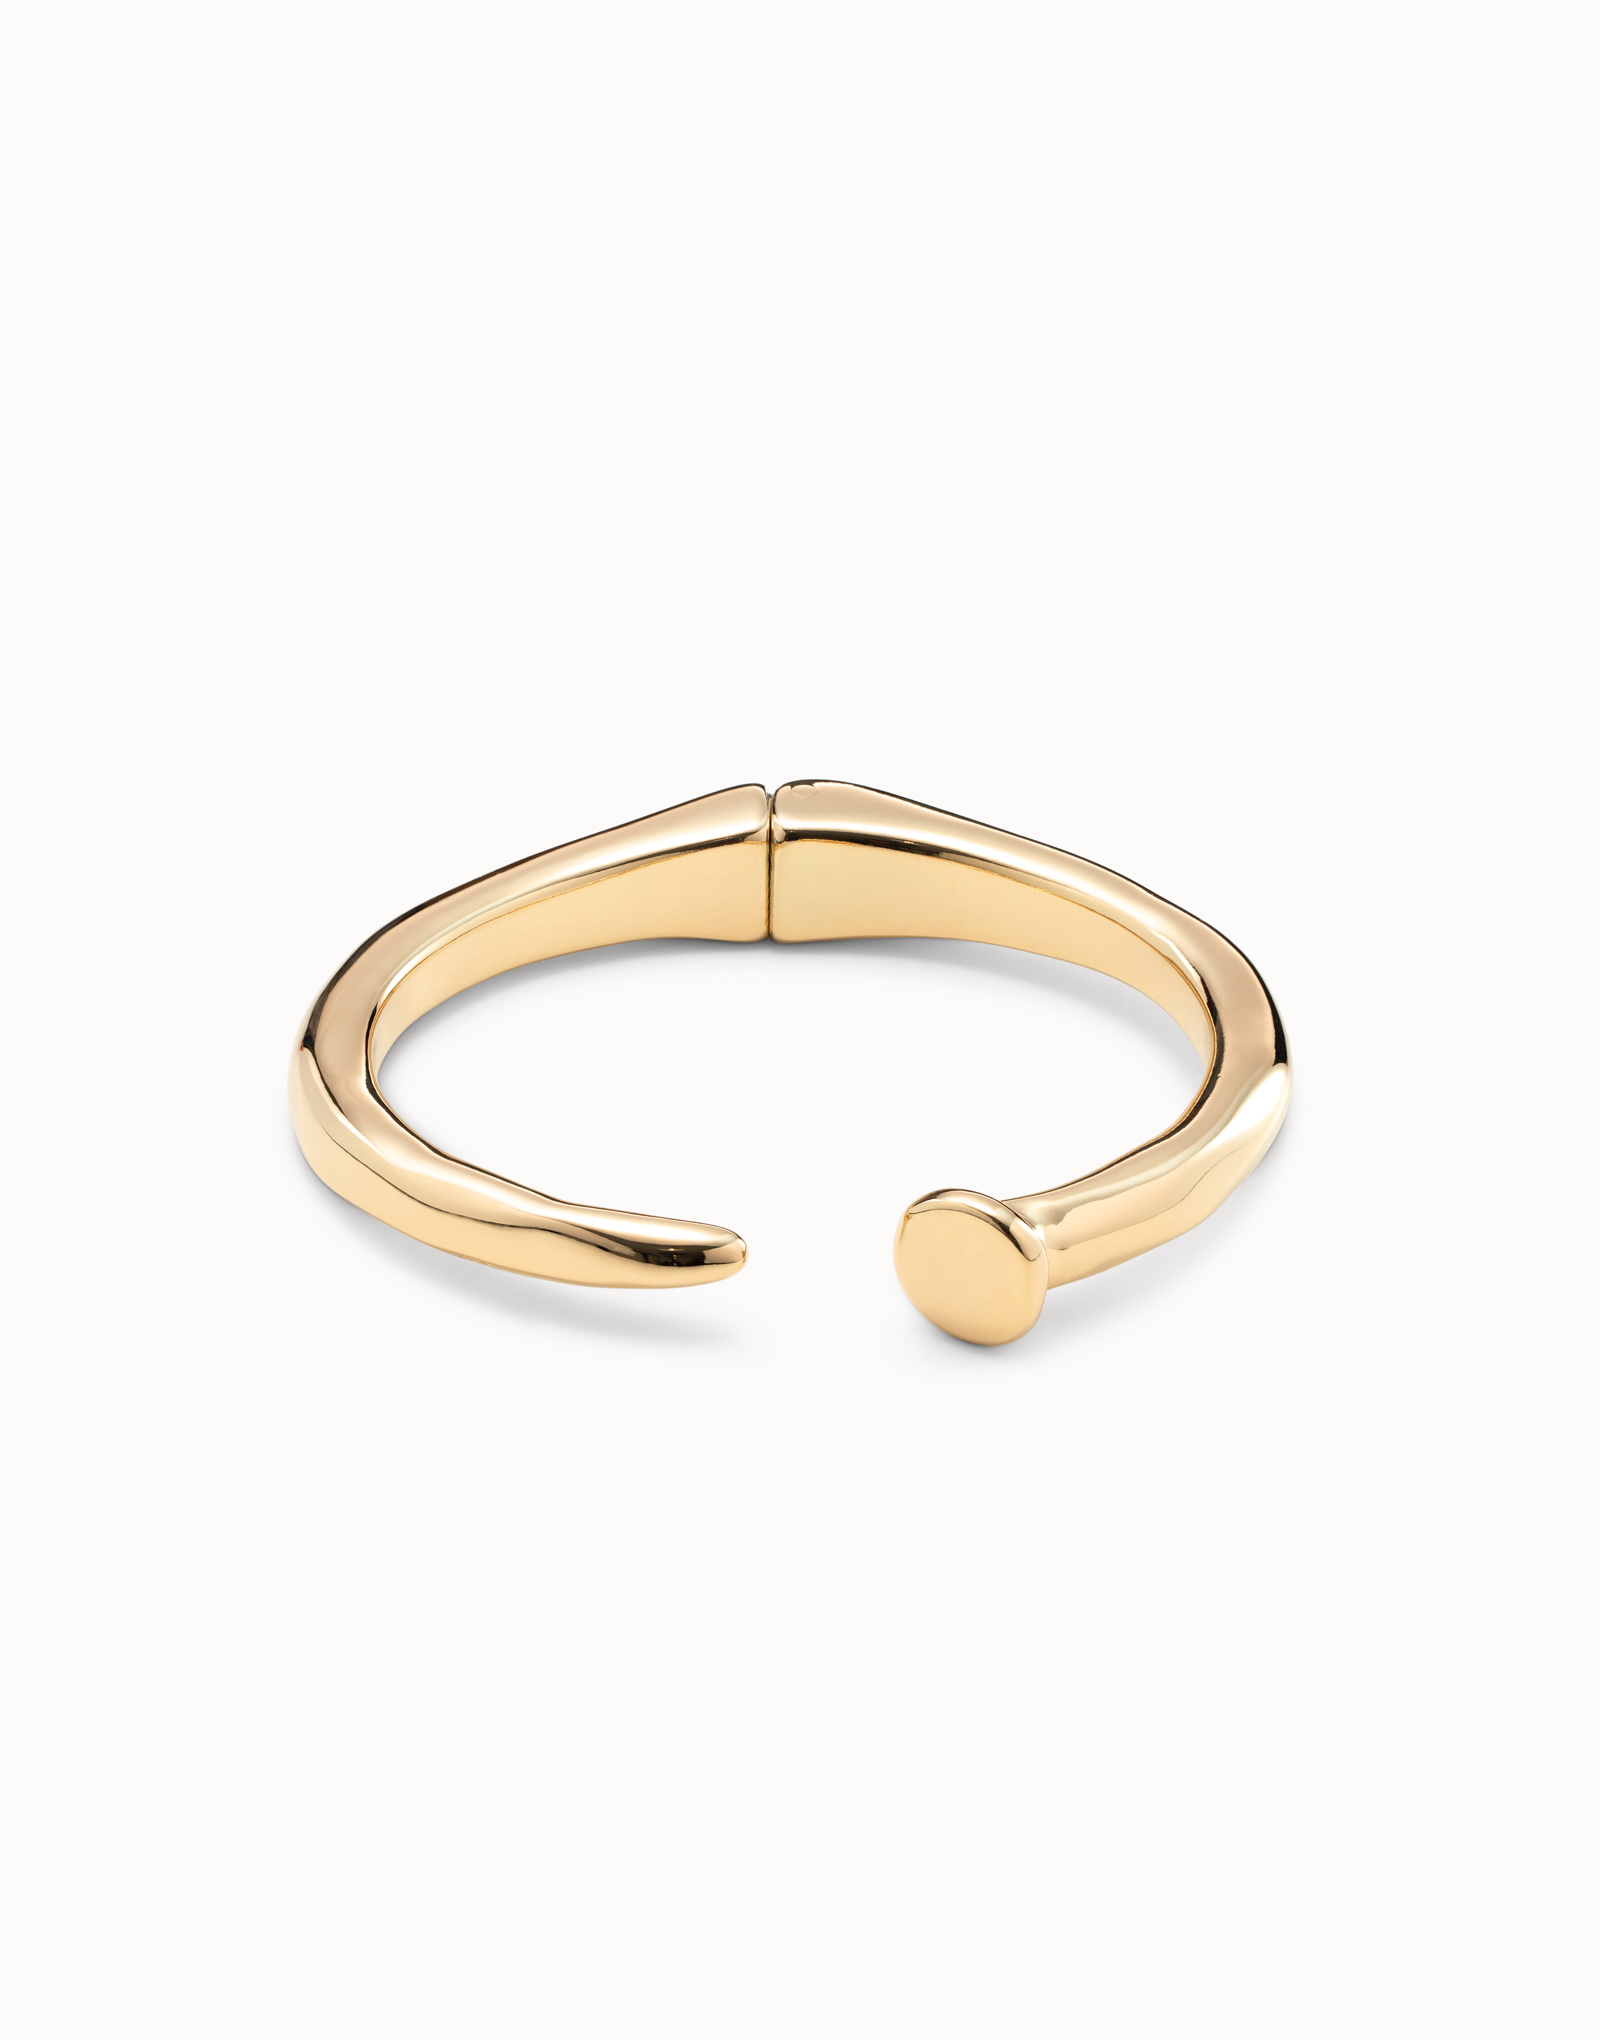 18K gold-plated rigid bracelet, Golden, large image number null